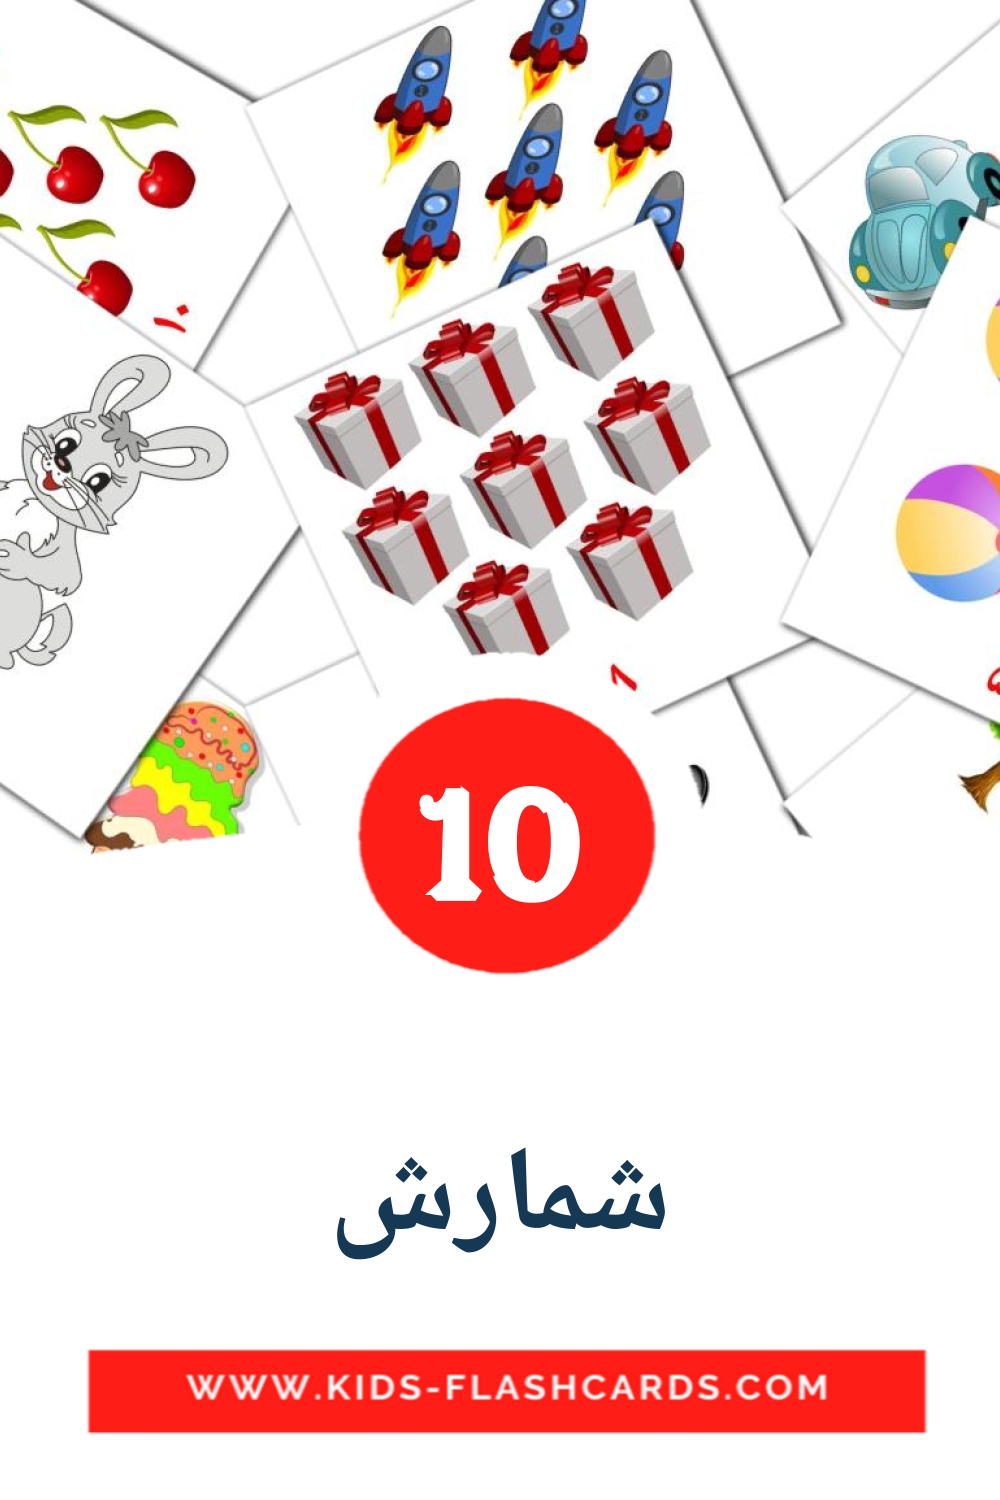 10 شمارش fotokaarten voor kleuters in het perzisch